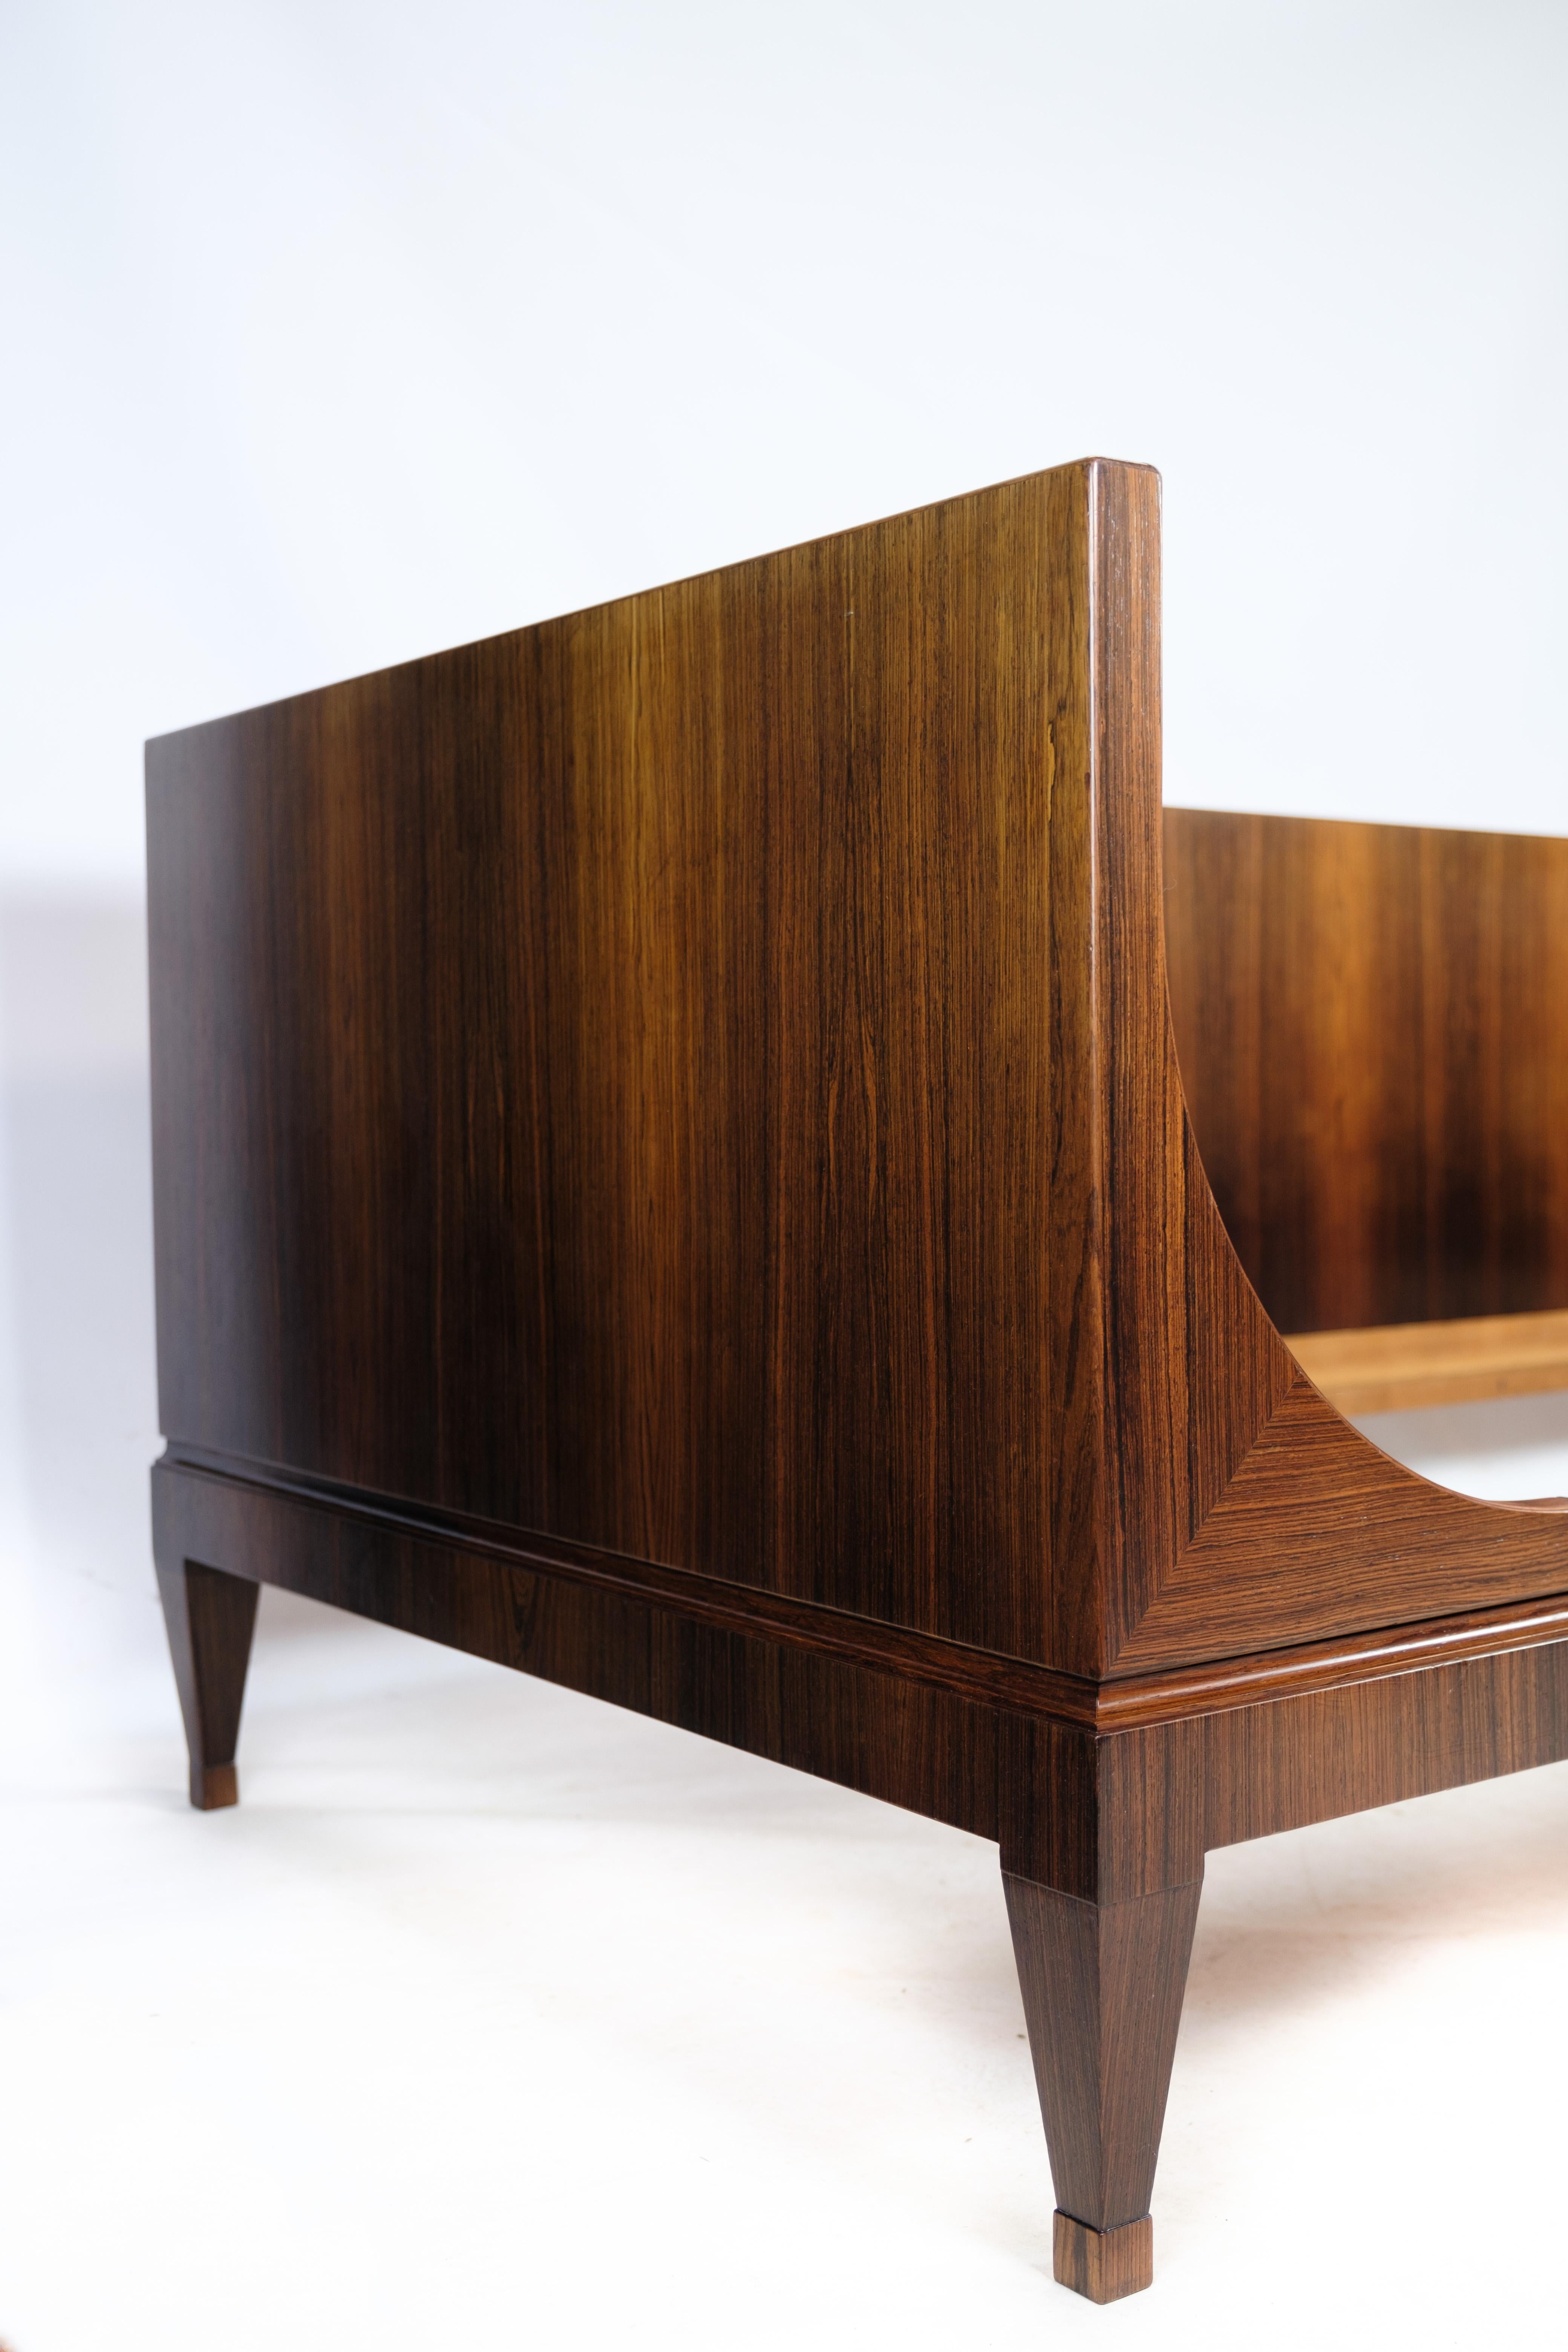 Mid-20th Century Scandinavian Modern Bed in Veneered Rosewood of Danish Design, 1960s For Sale